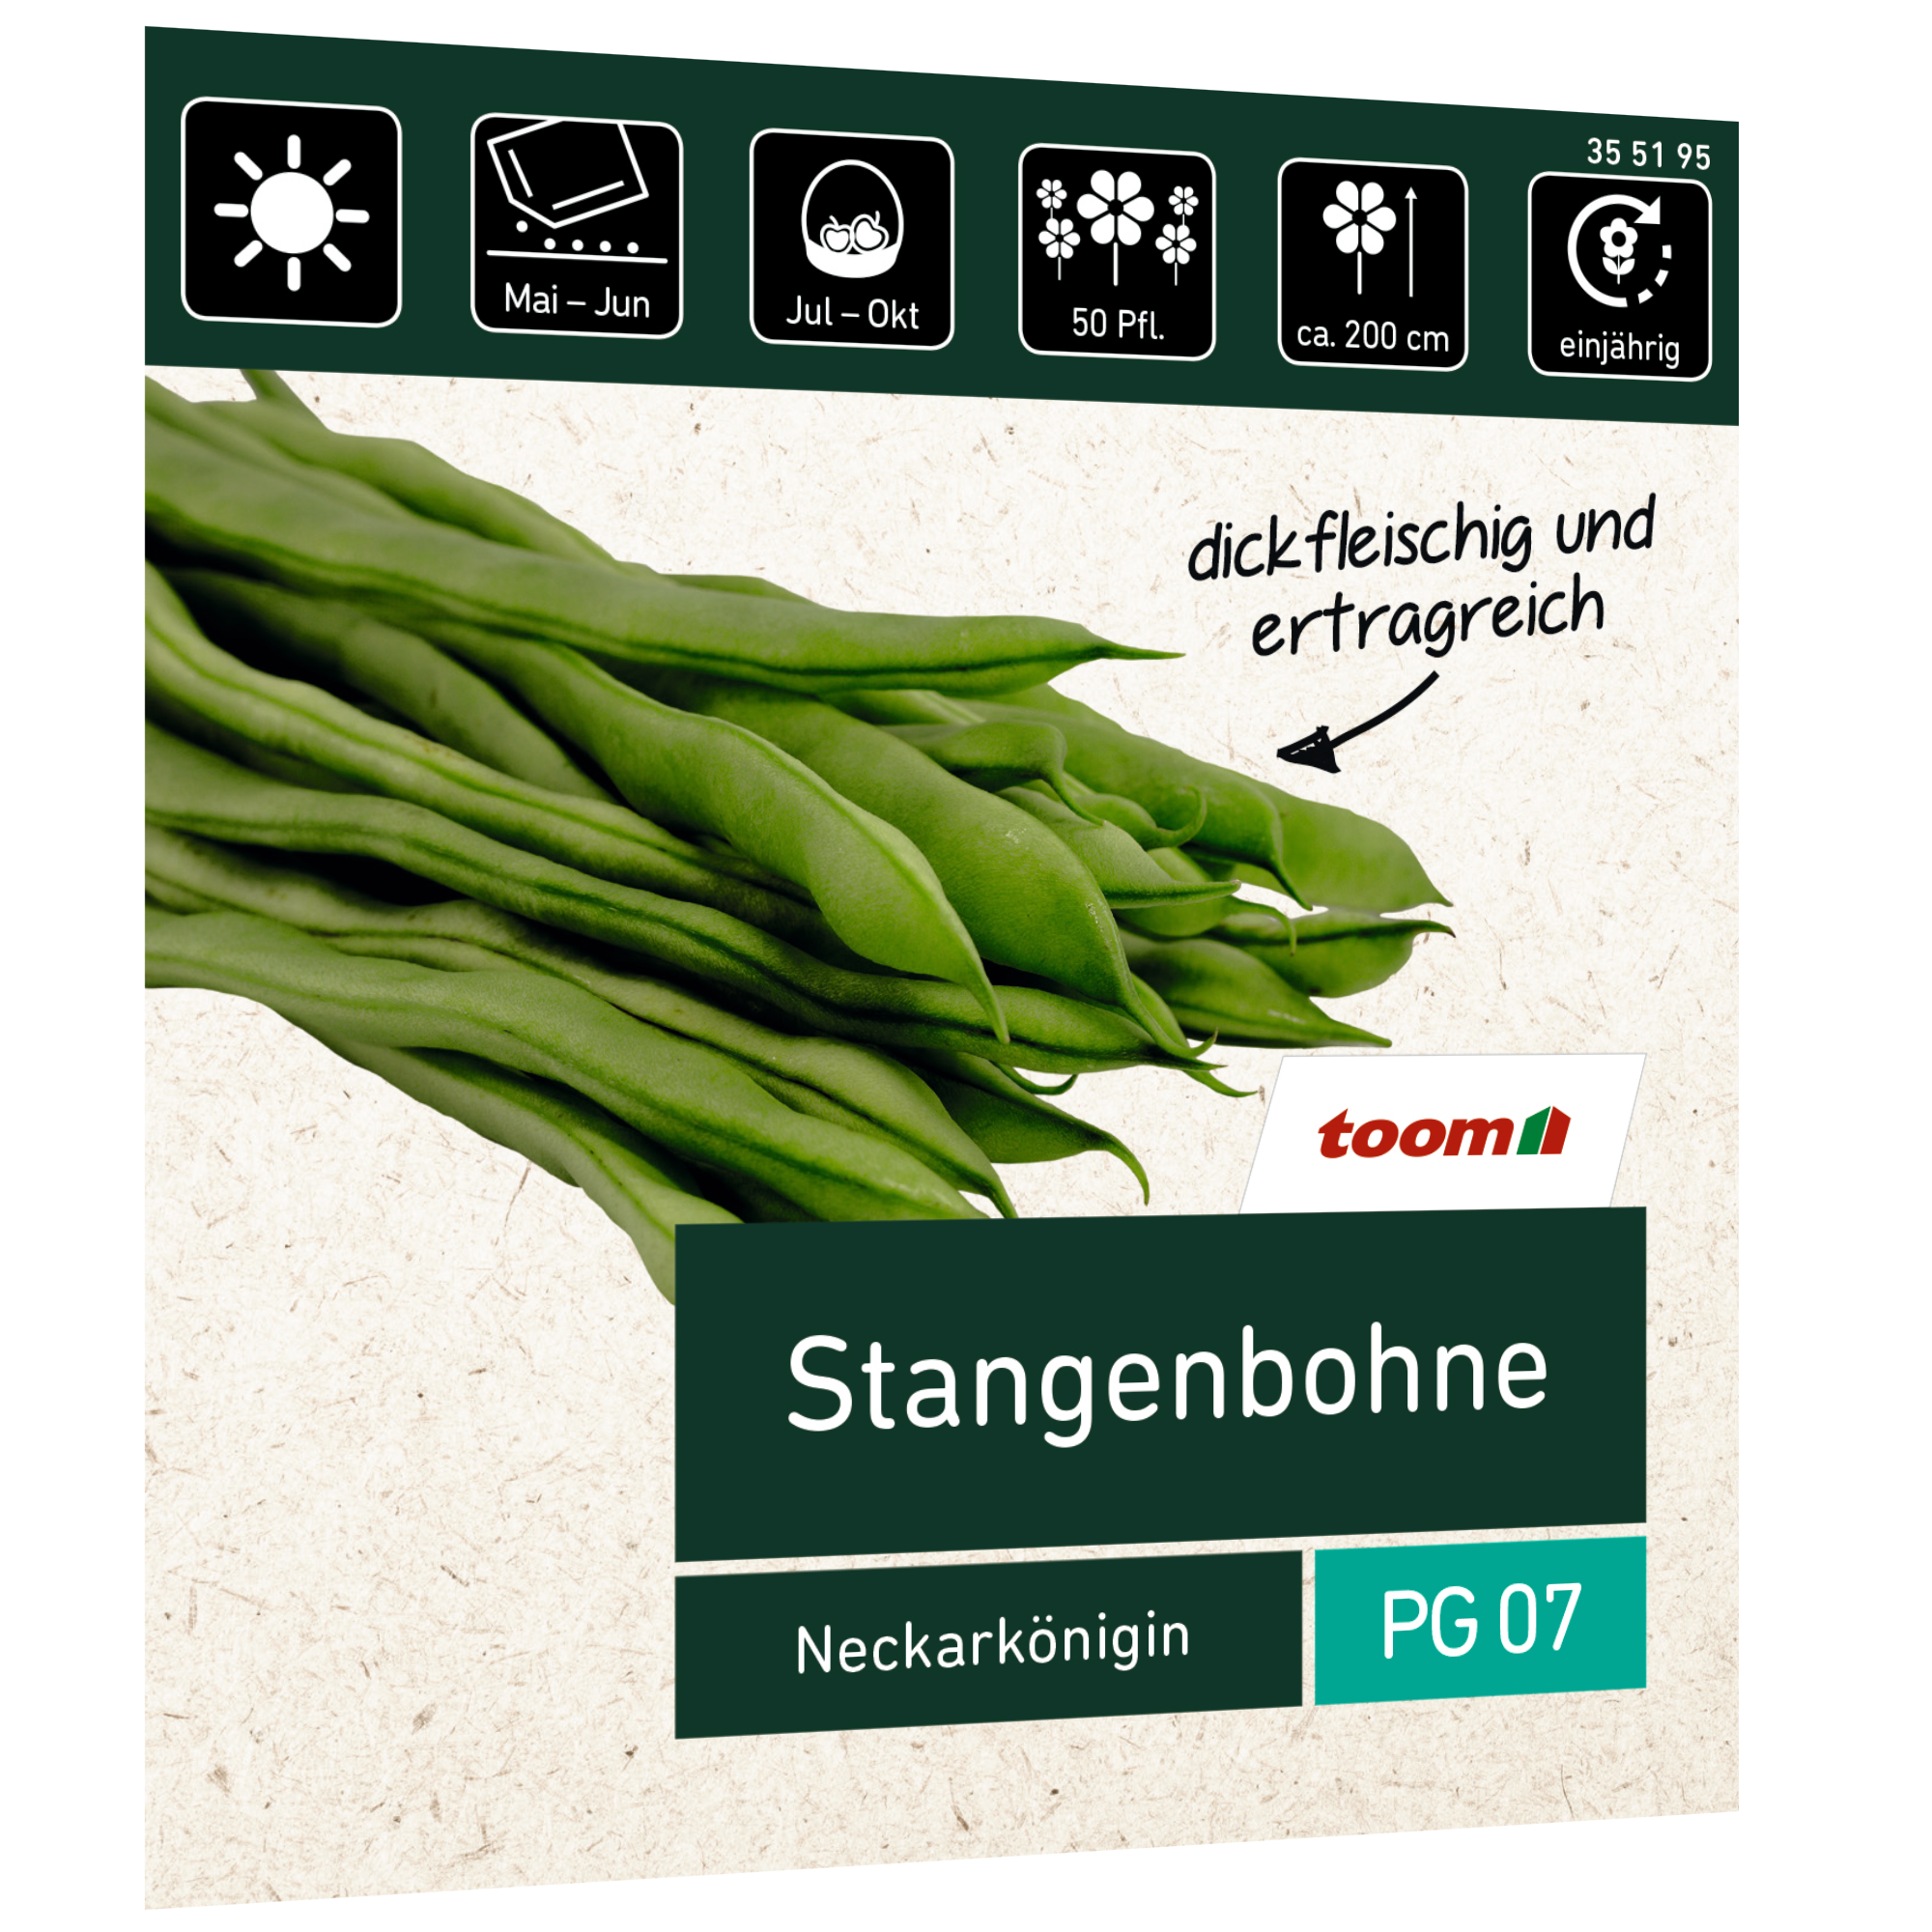 Stangenbohne 'Neckarkönigin' + product picture